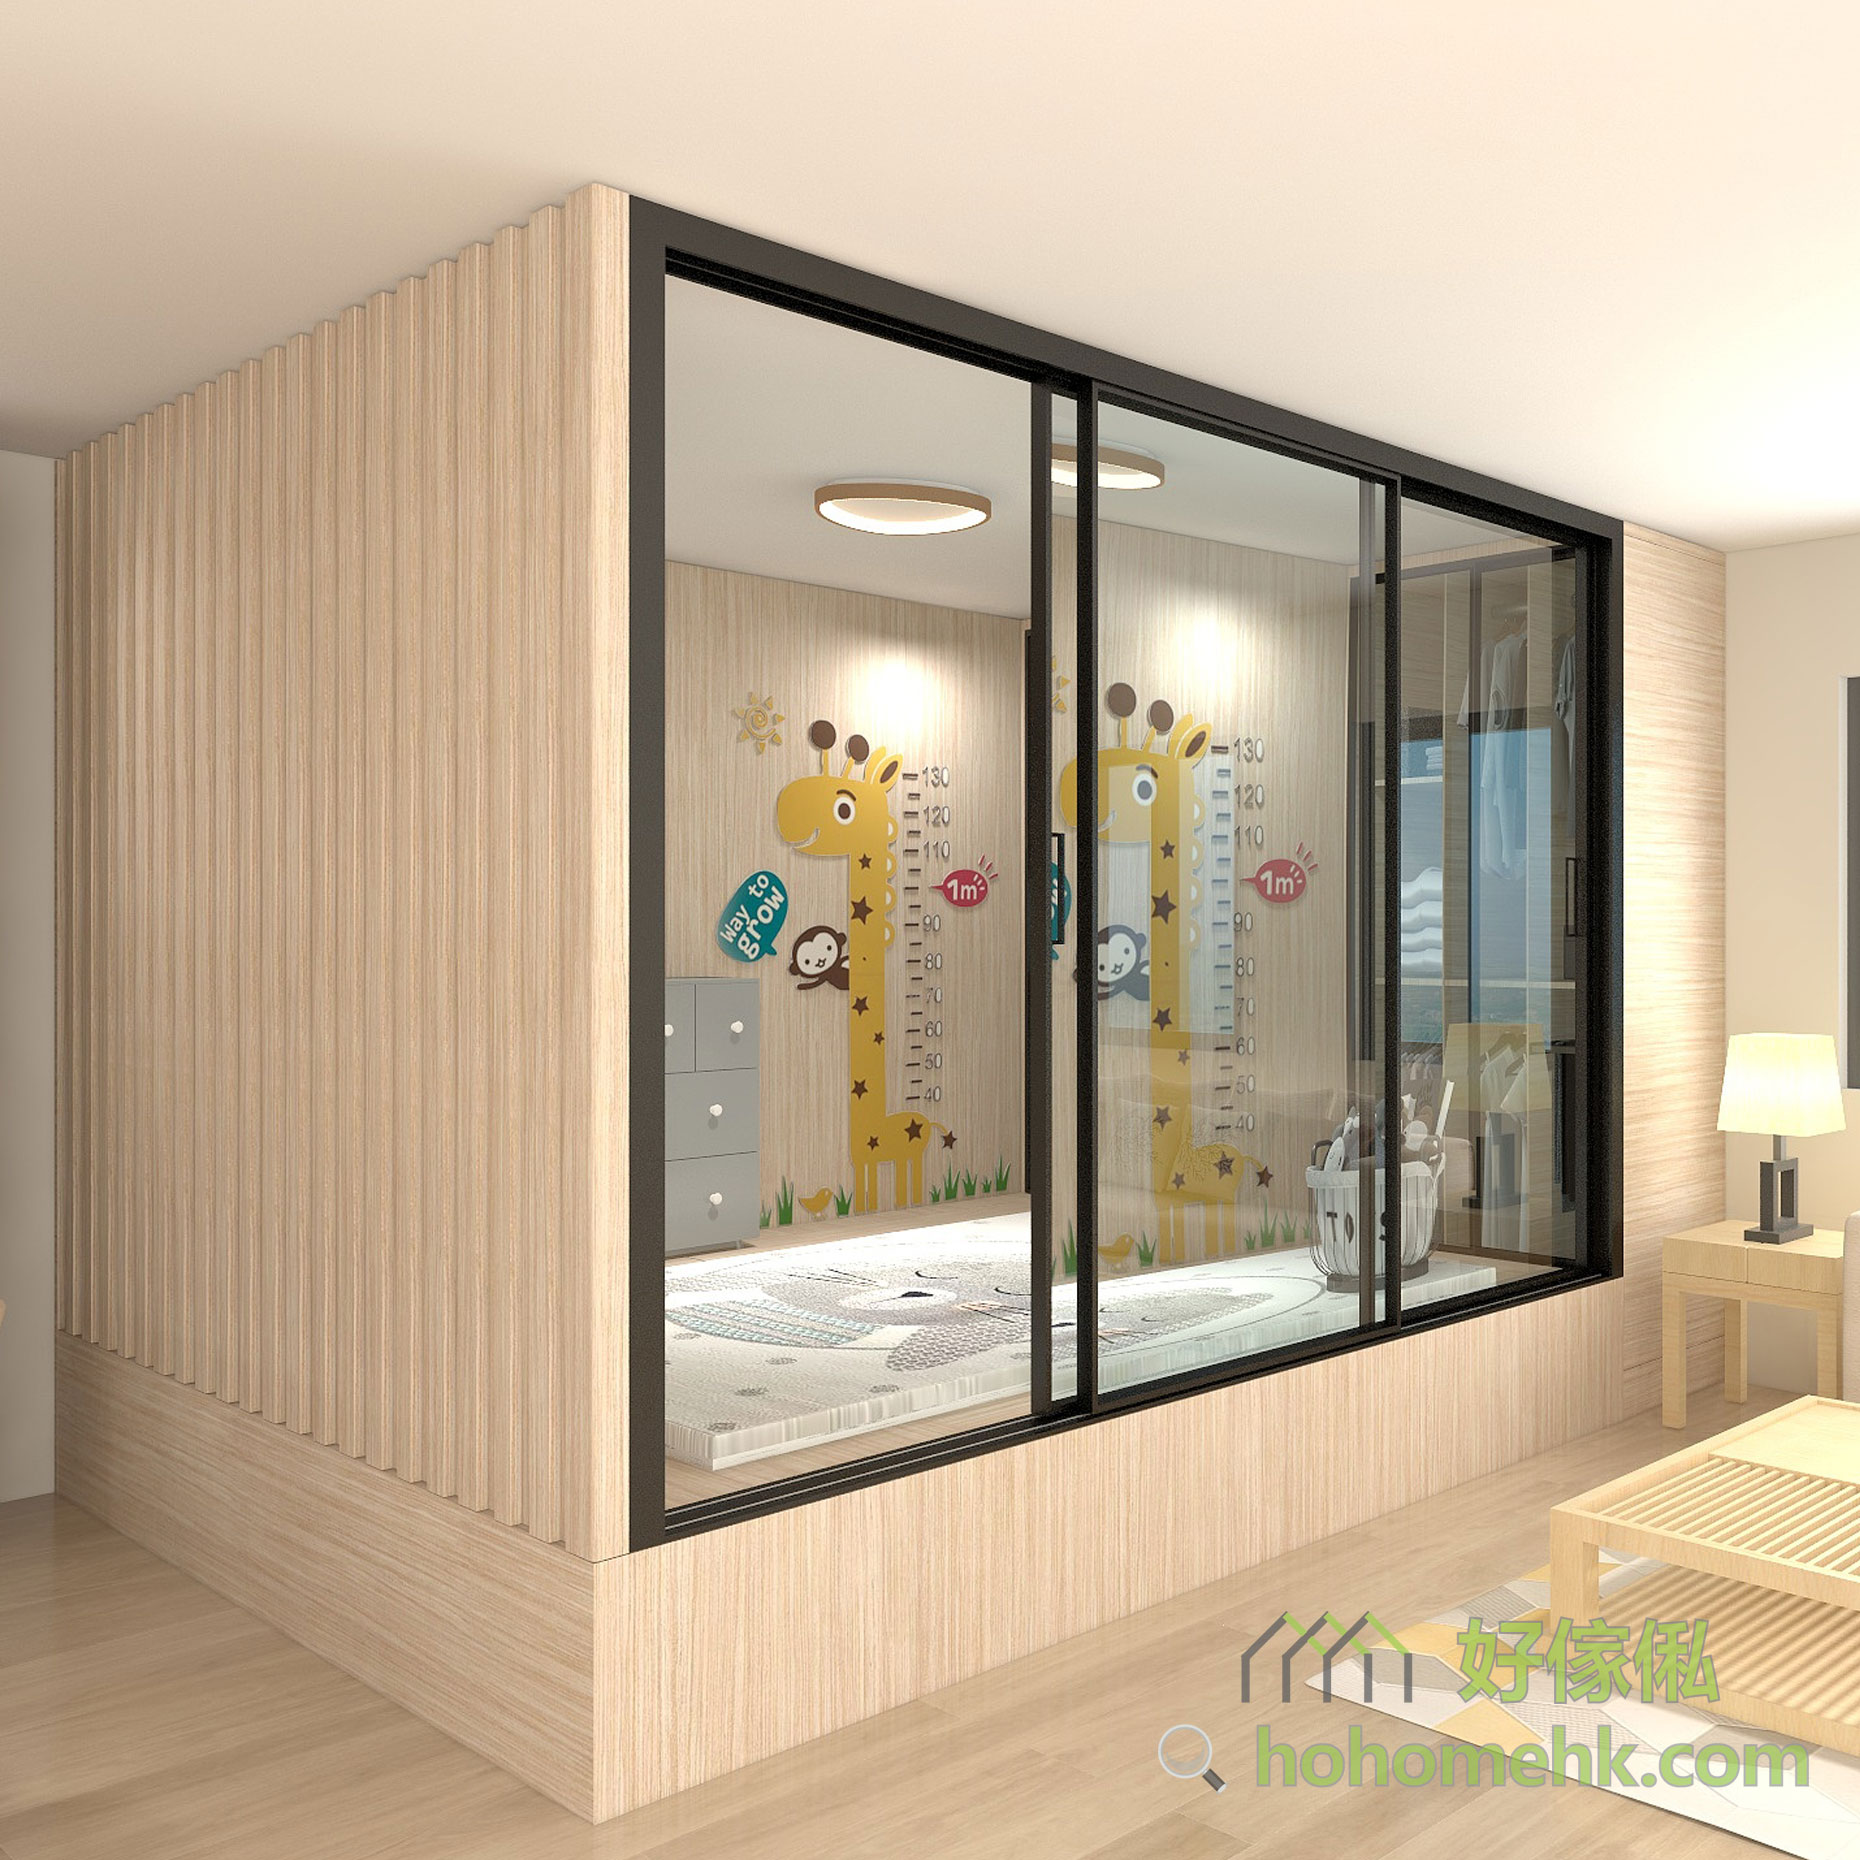 玻璃的通透可以避免家居因間房而導致視覺空間上的明顯分割感，從而增加全屋的空間感。